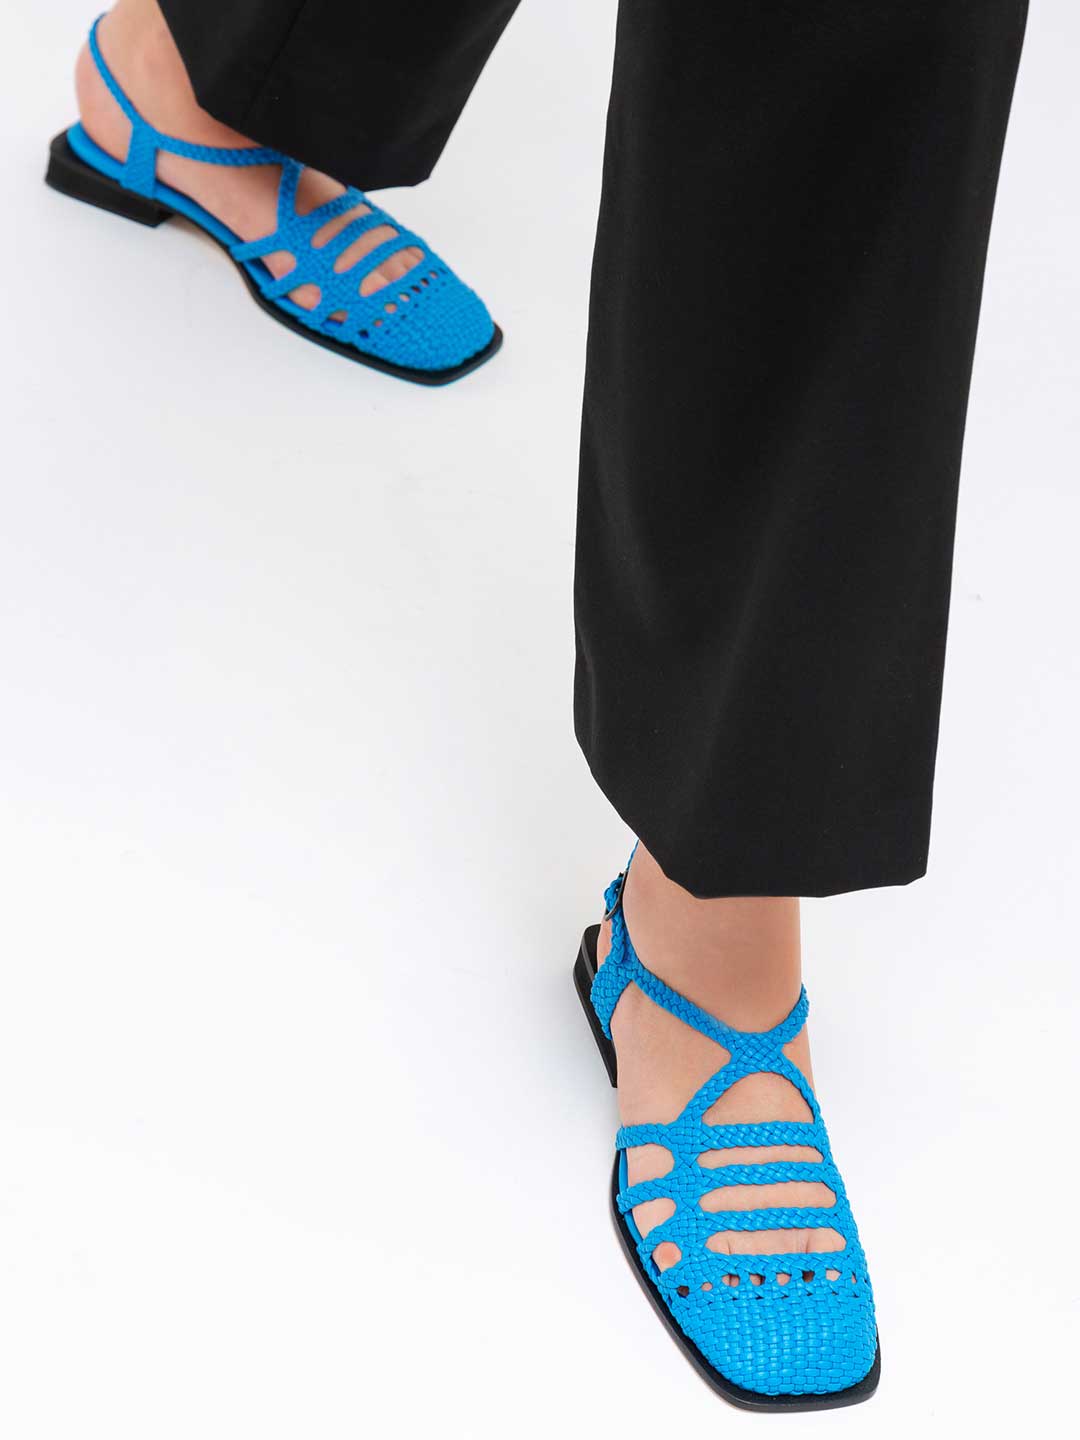 Barana Woven Sandals - Blue